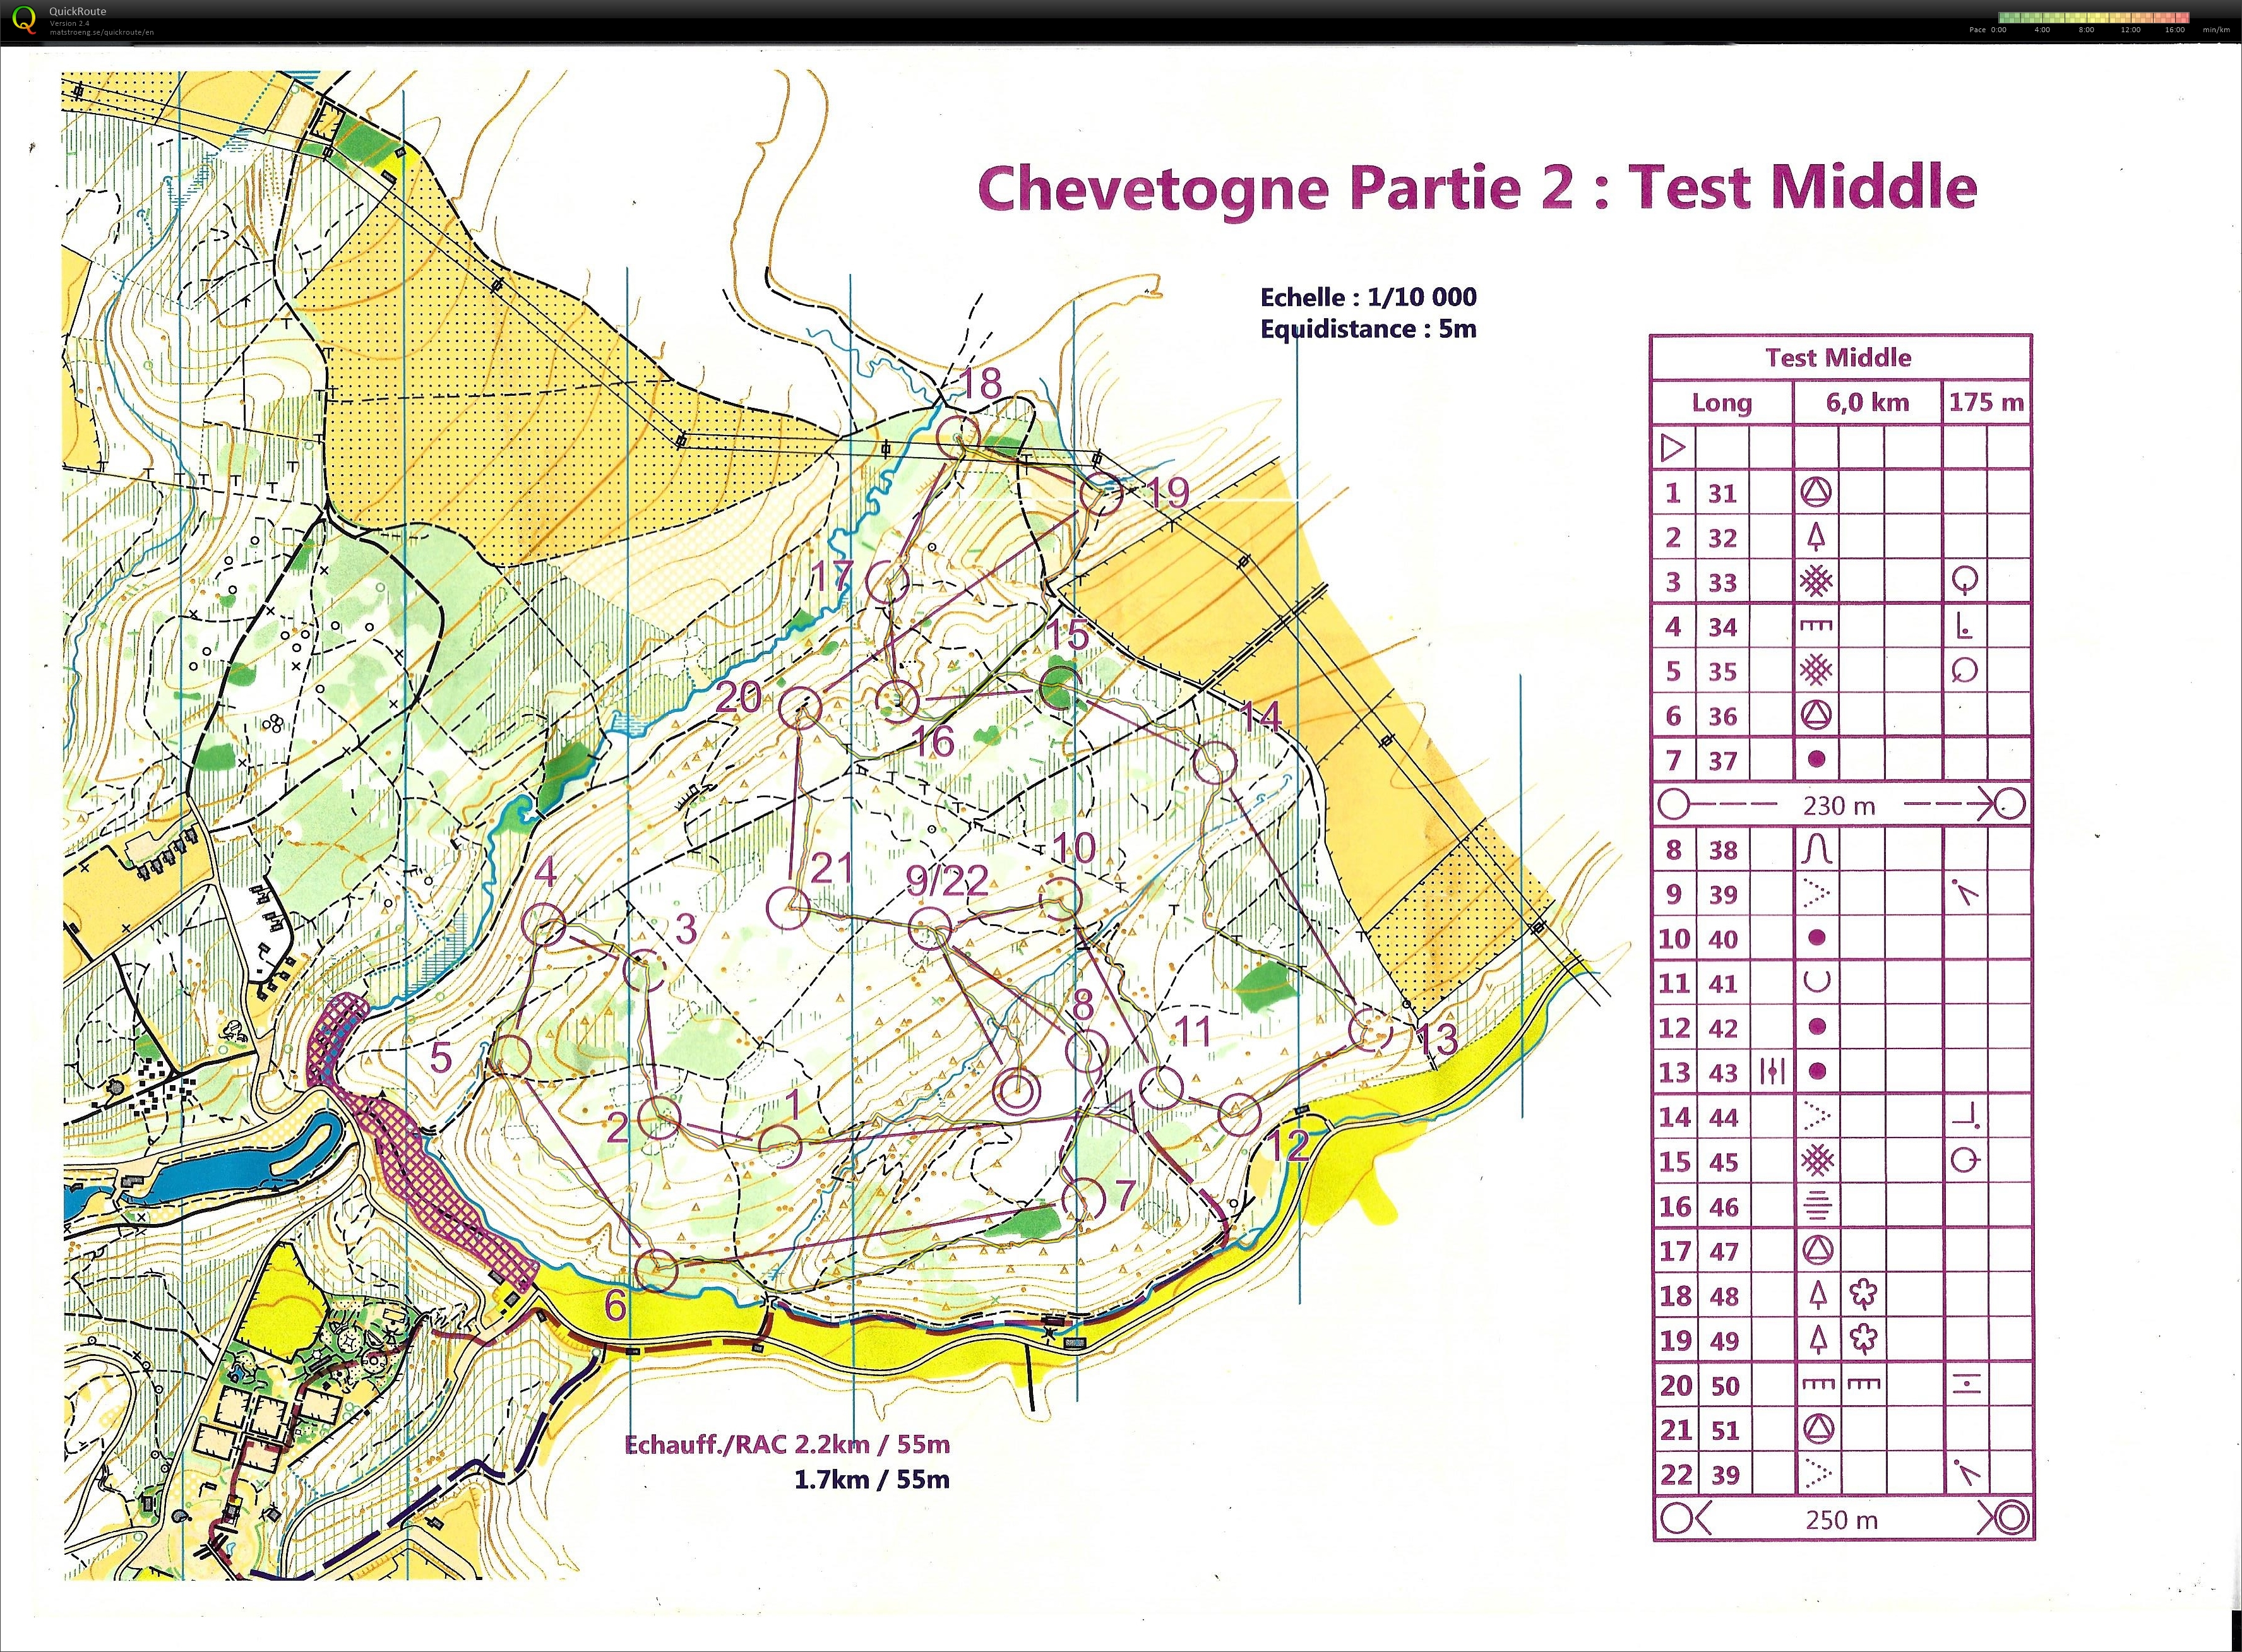 Entrainement Middle Distance Chevetogne (2021-02-07)